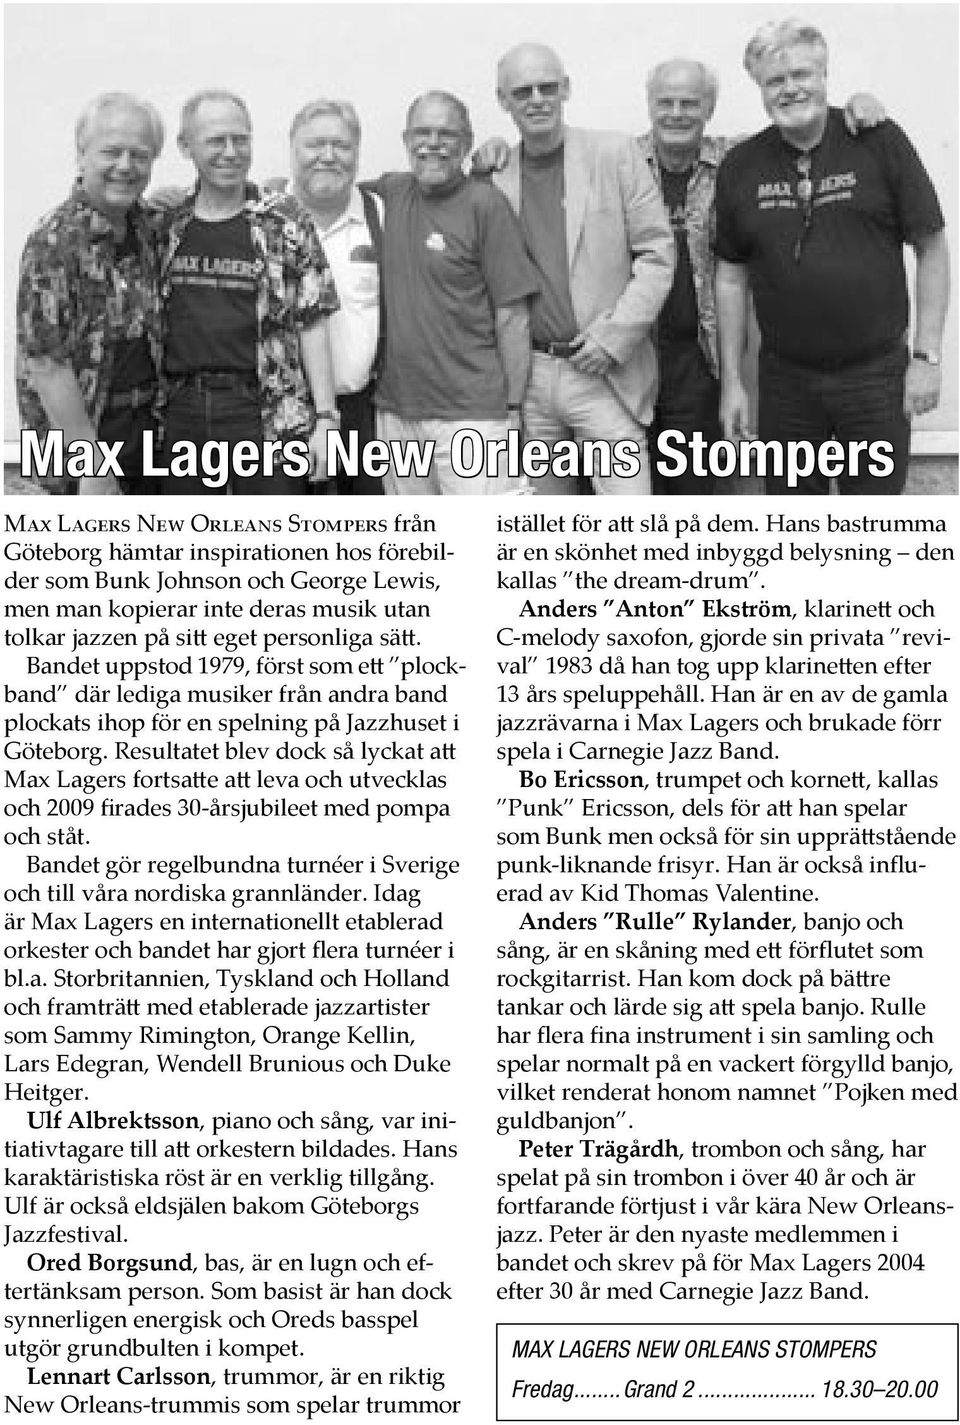 Resultatet blev dock så lyckat a Max Lagers fortsa e a leva och utvecklas och 2009 firades 30-årsjubileet med pompa och ståt.